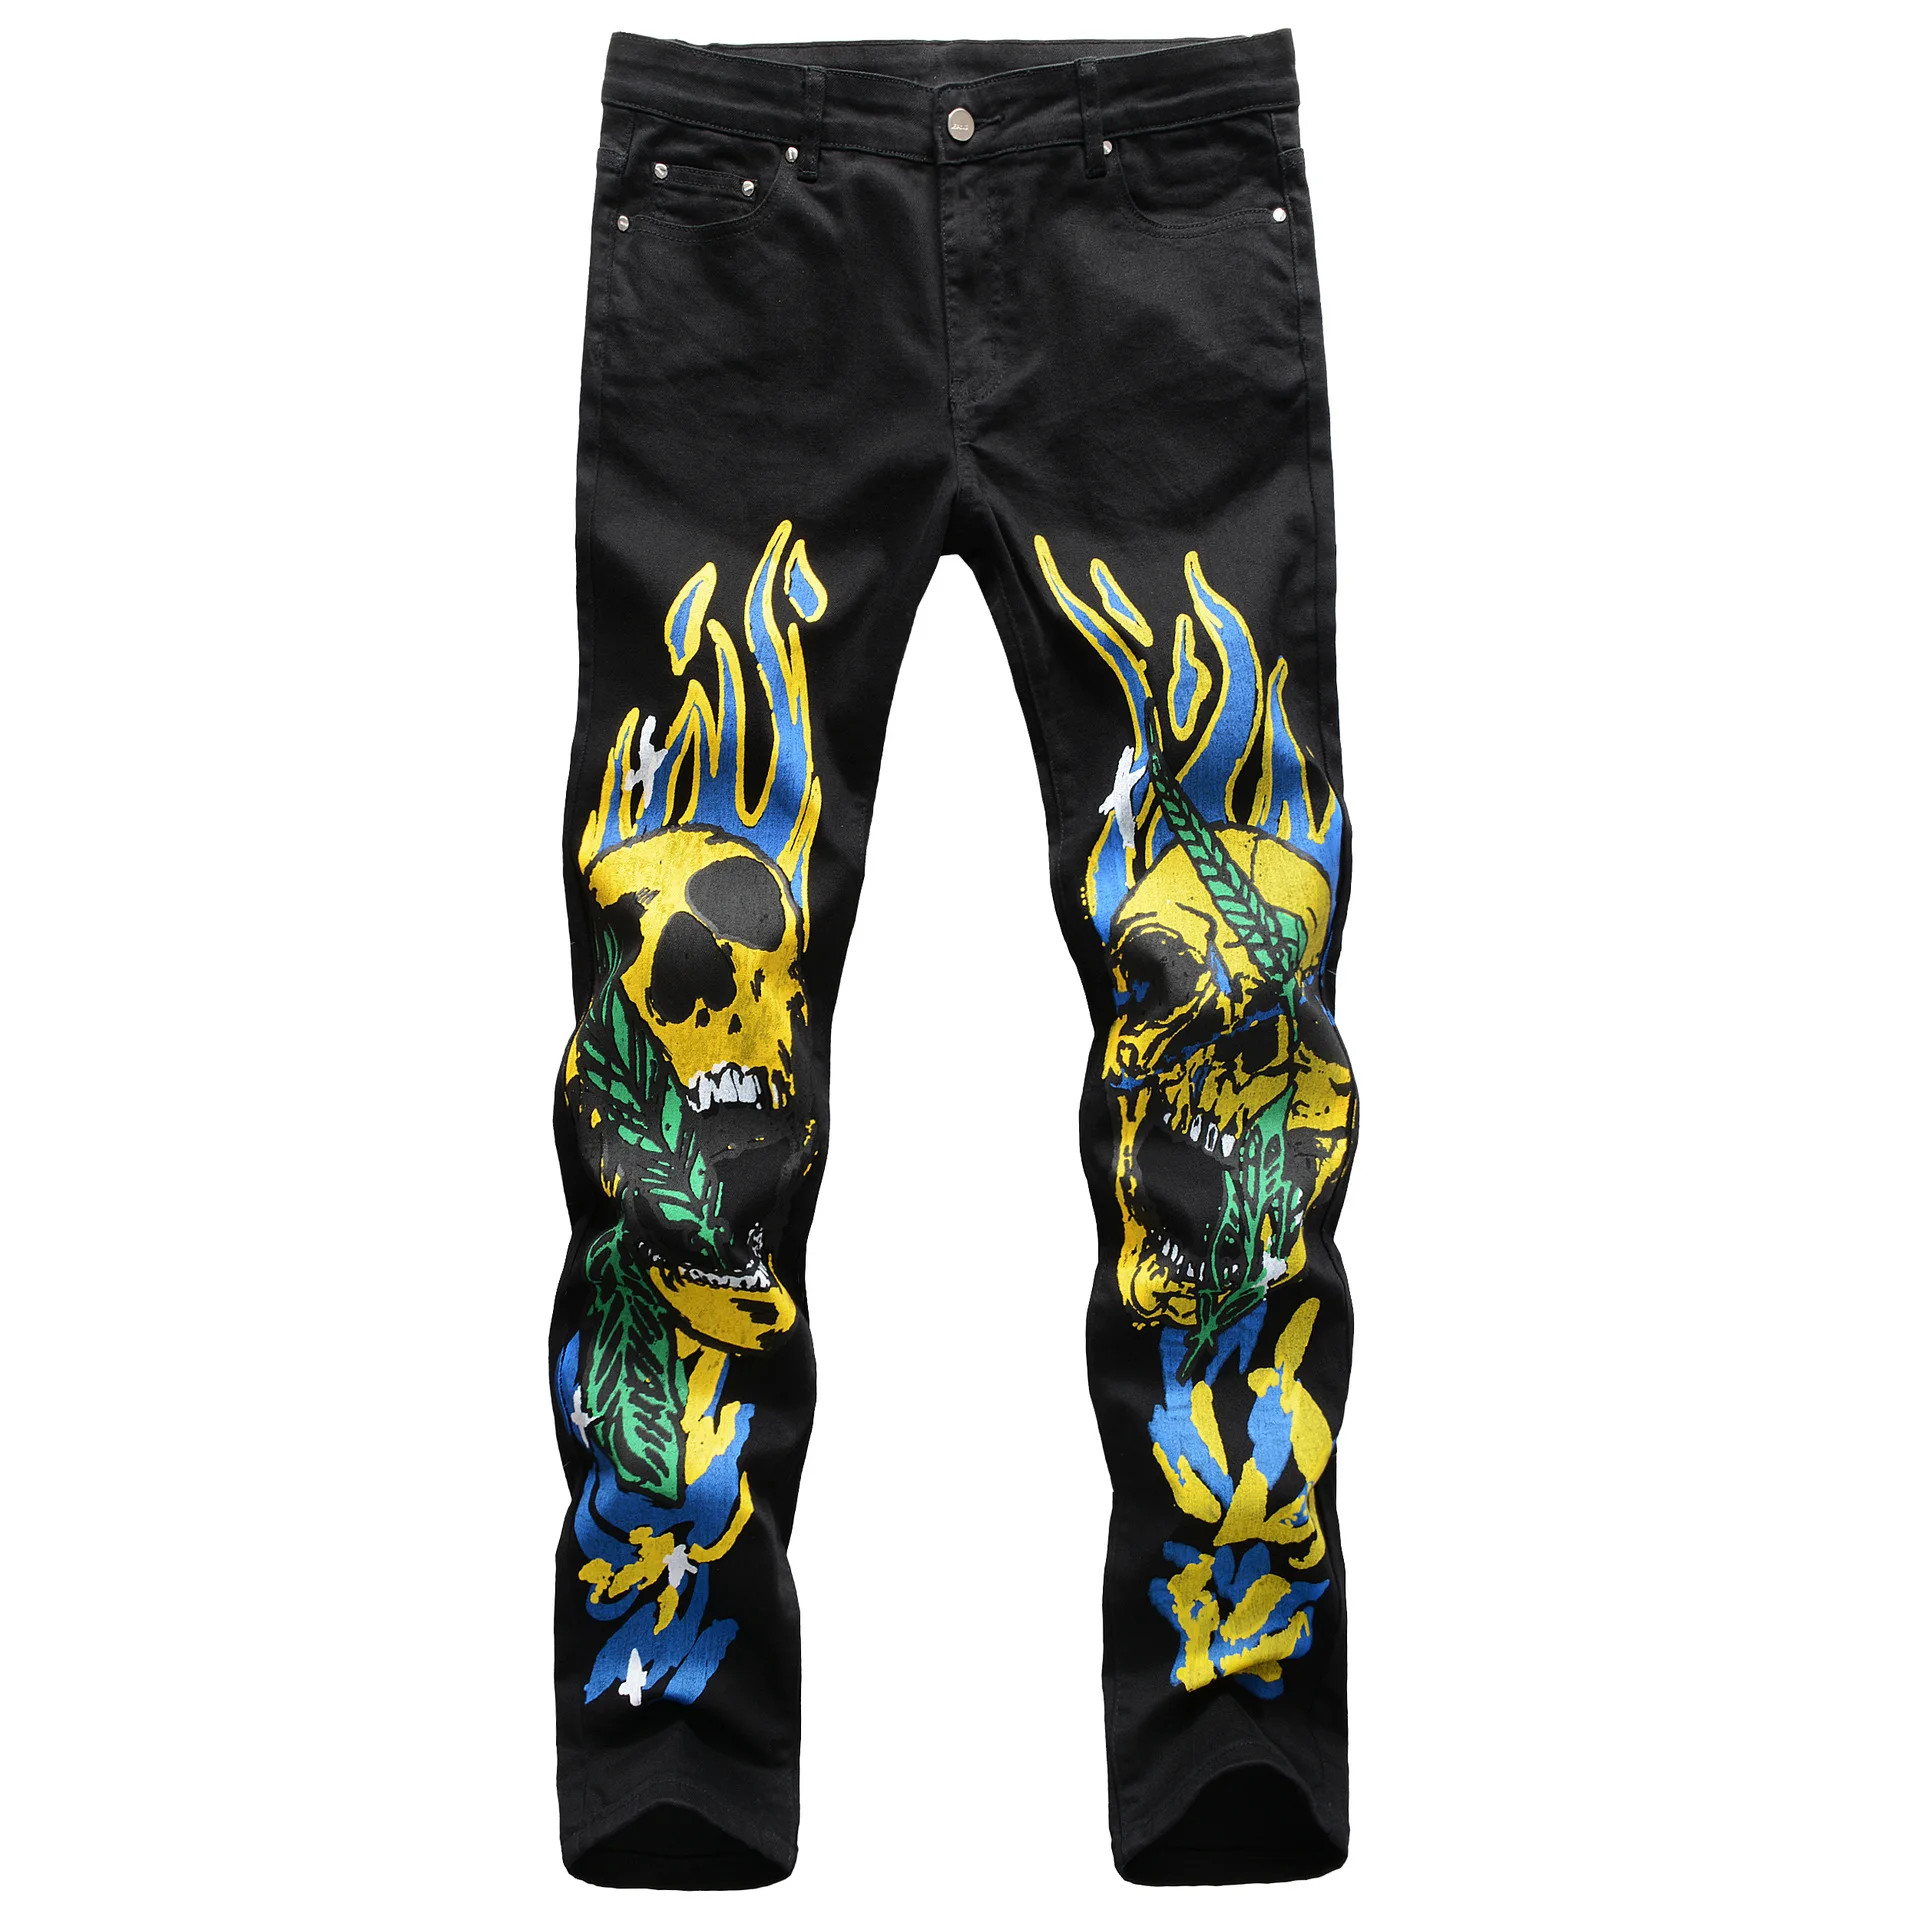 

Джинсы мужские стрейчевые, облегающие брюки из денима, с 3D-принтом пламени, черепа, граффити, уличные модные штаны